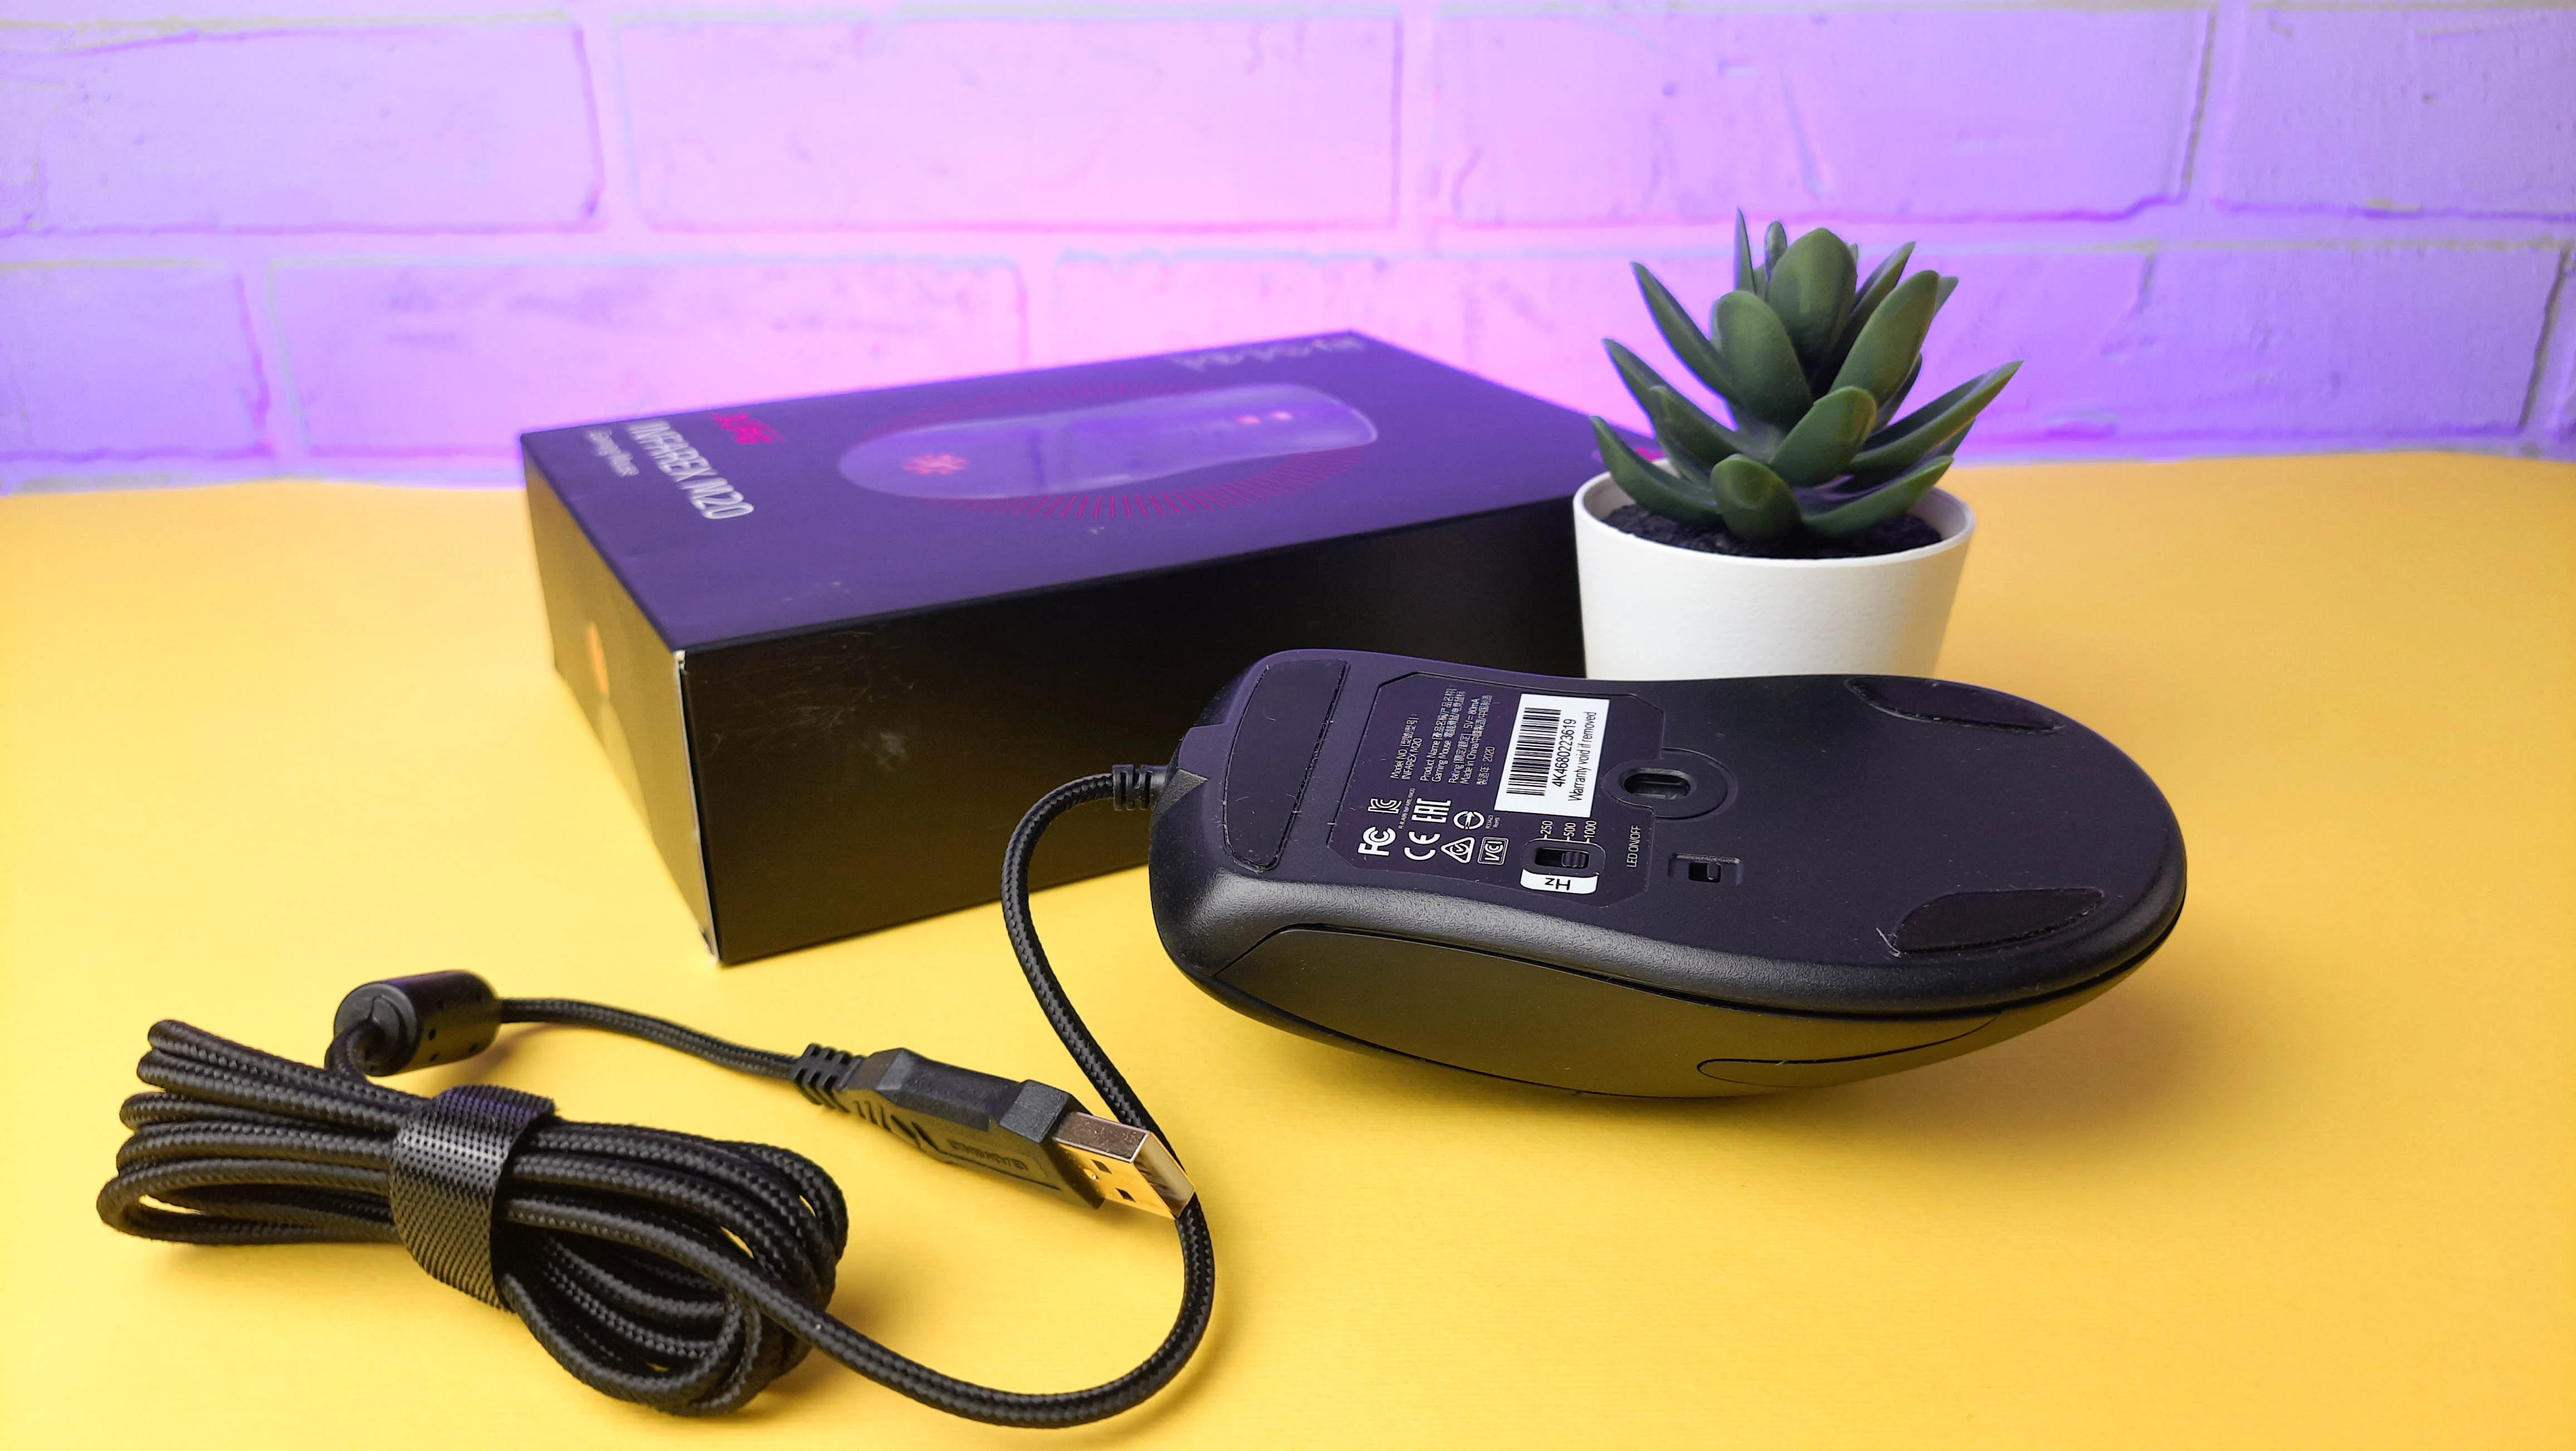 Обзор XPG Infarex M20: бюджетная игровая мышка с RGB-подсветкой - фото 6